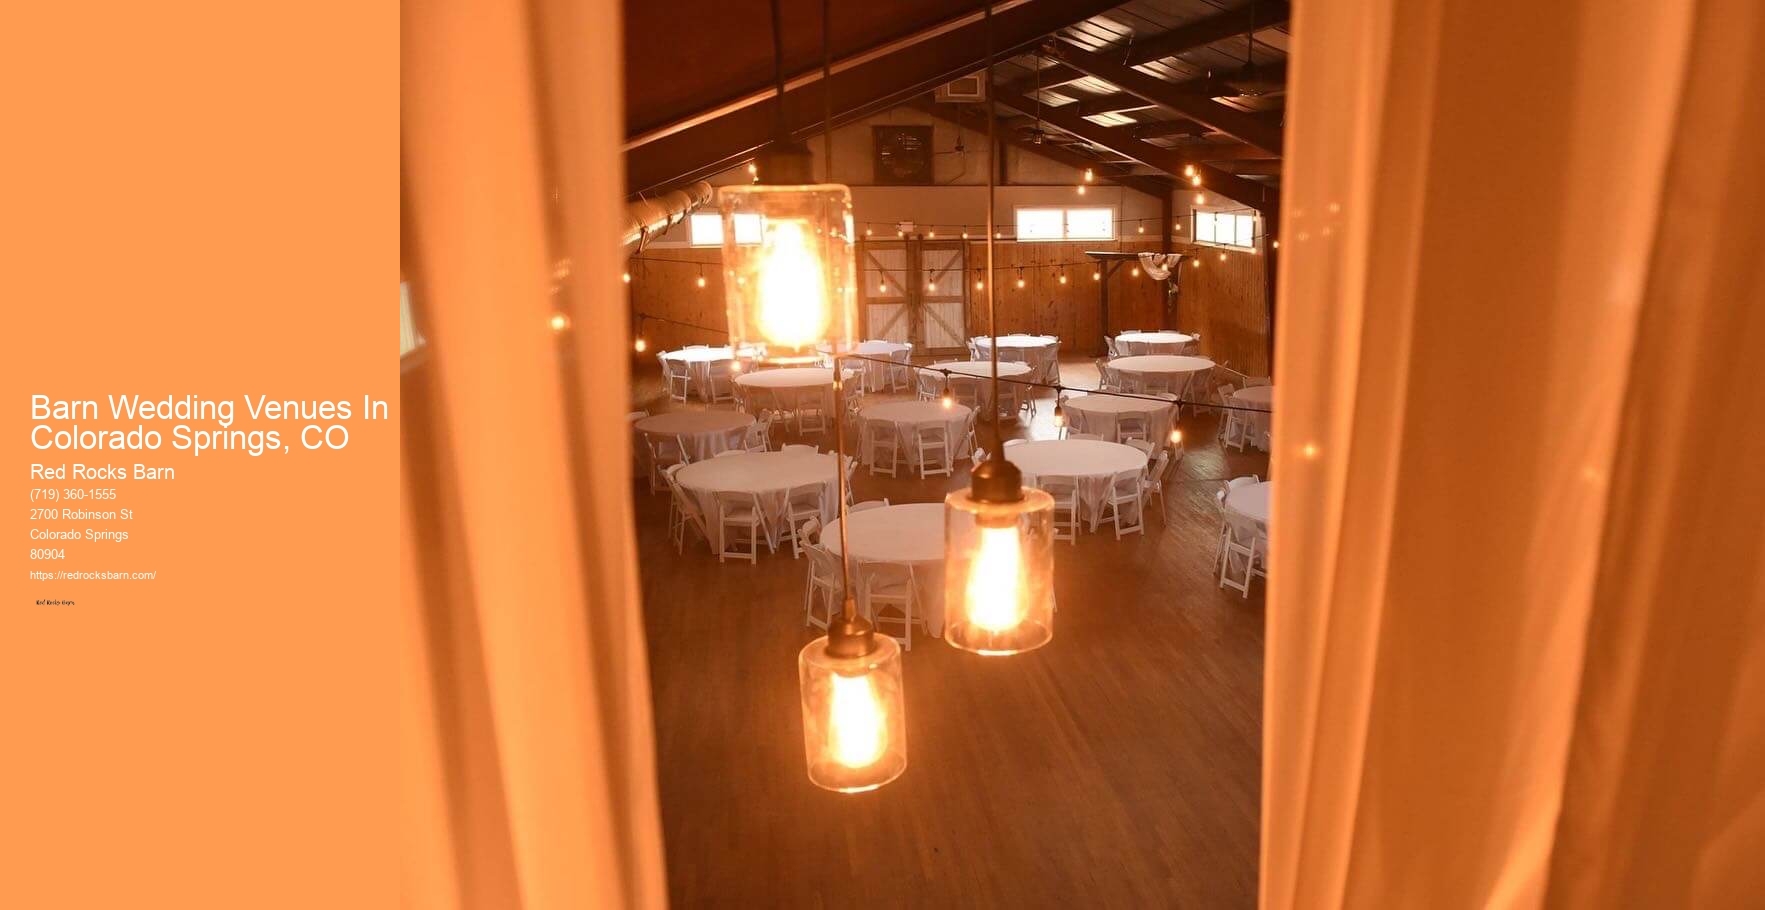 Barn Wedding Venues In Colorado Springs, CO